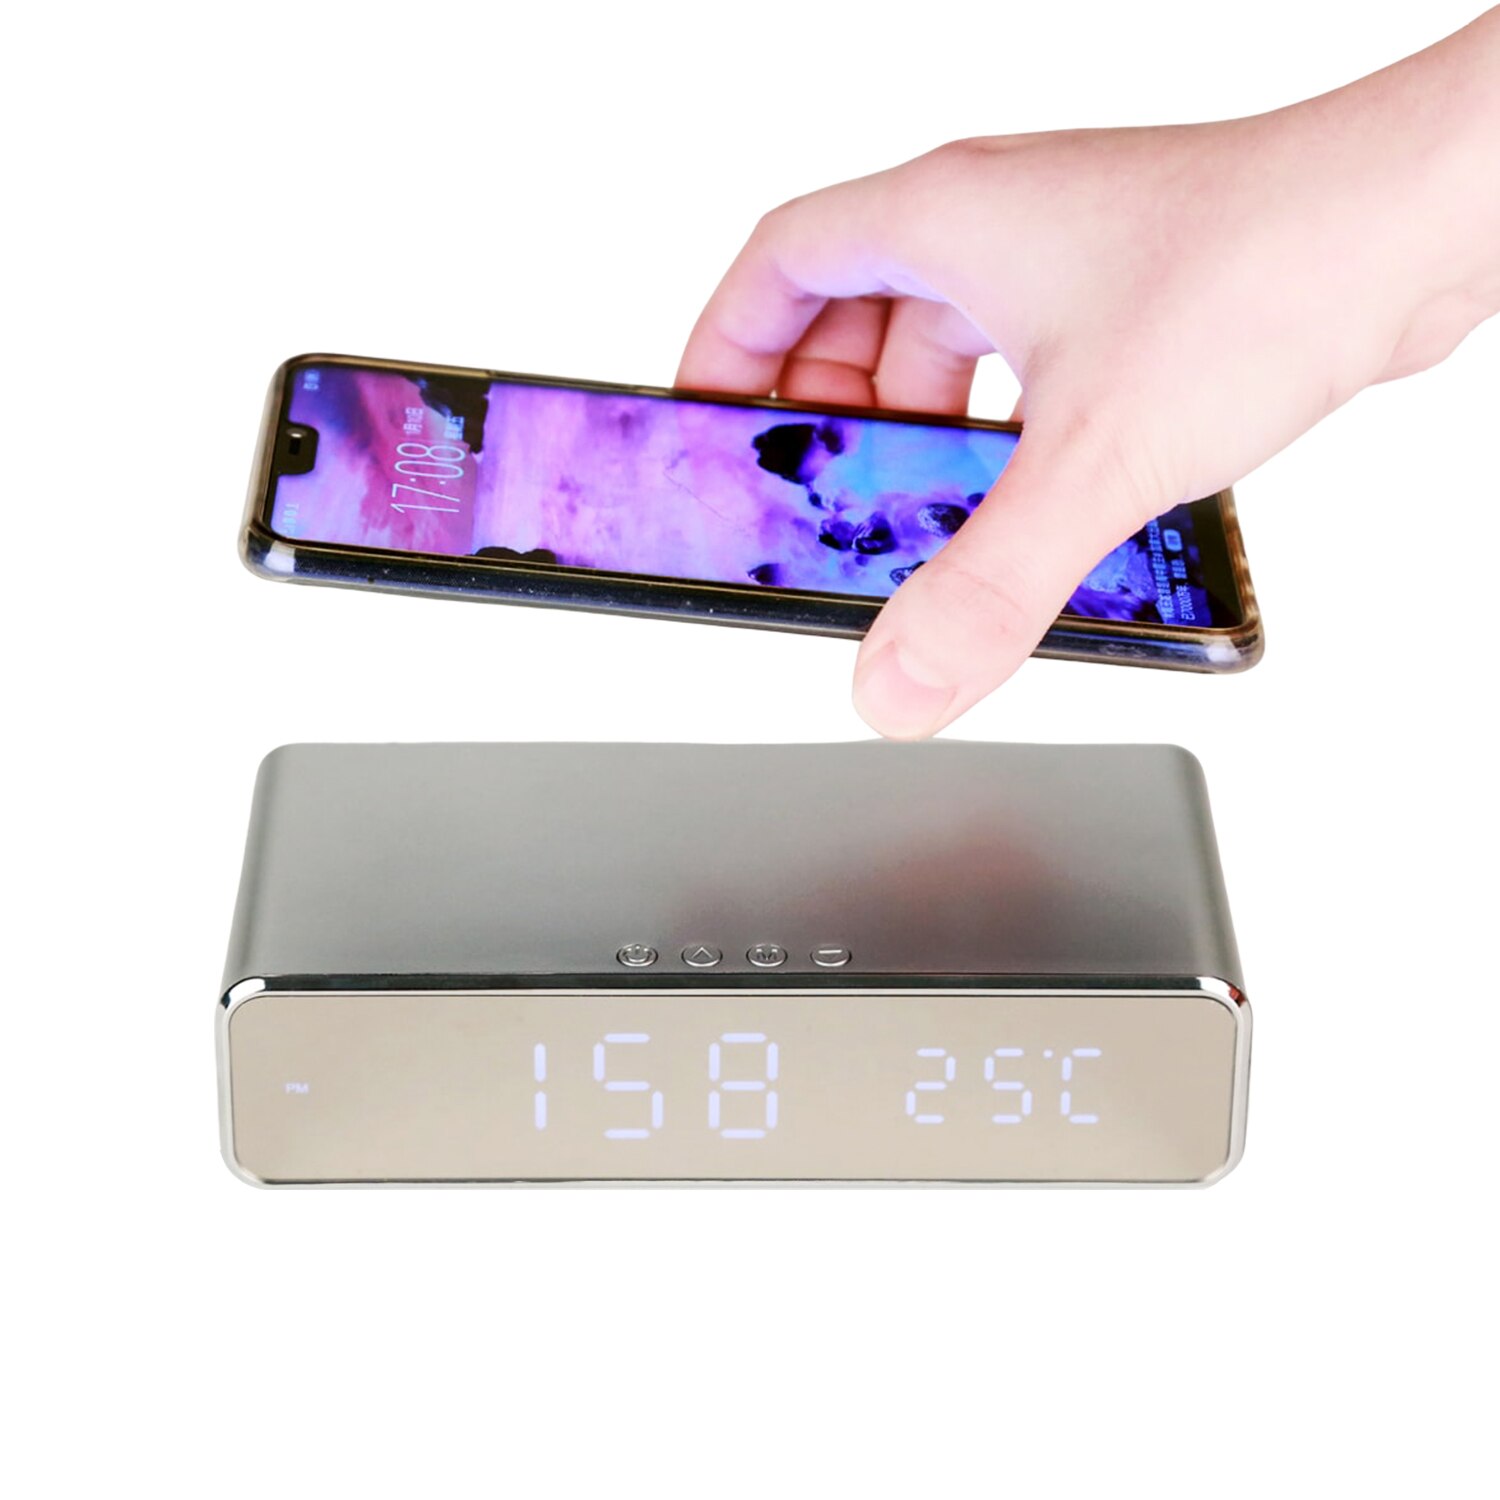 Led Digitale Wekker Met Qi Draadloze Opladen Pad Tijd Datum Temperatuur Display Draadloze Oplader Voor Mobiele Telefoon Klaring